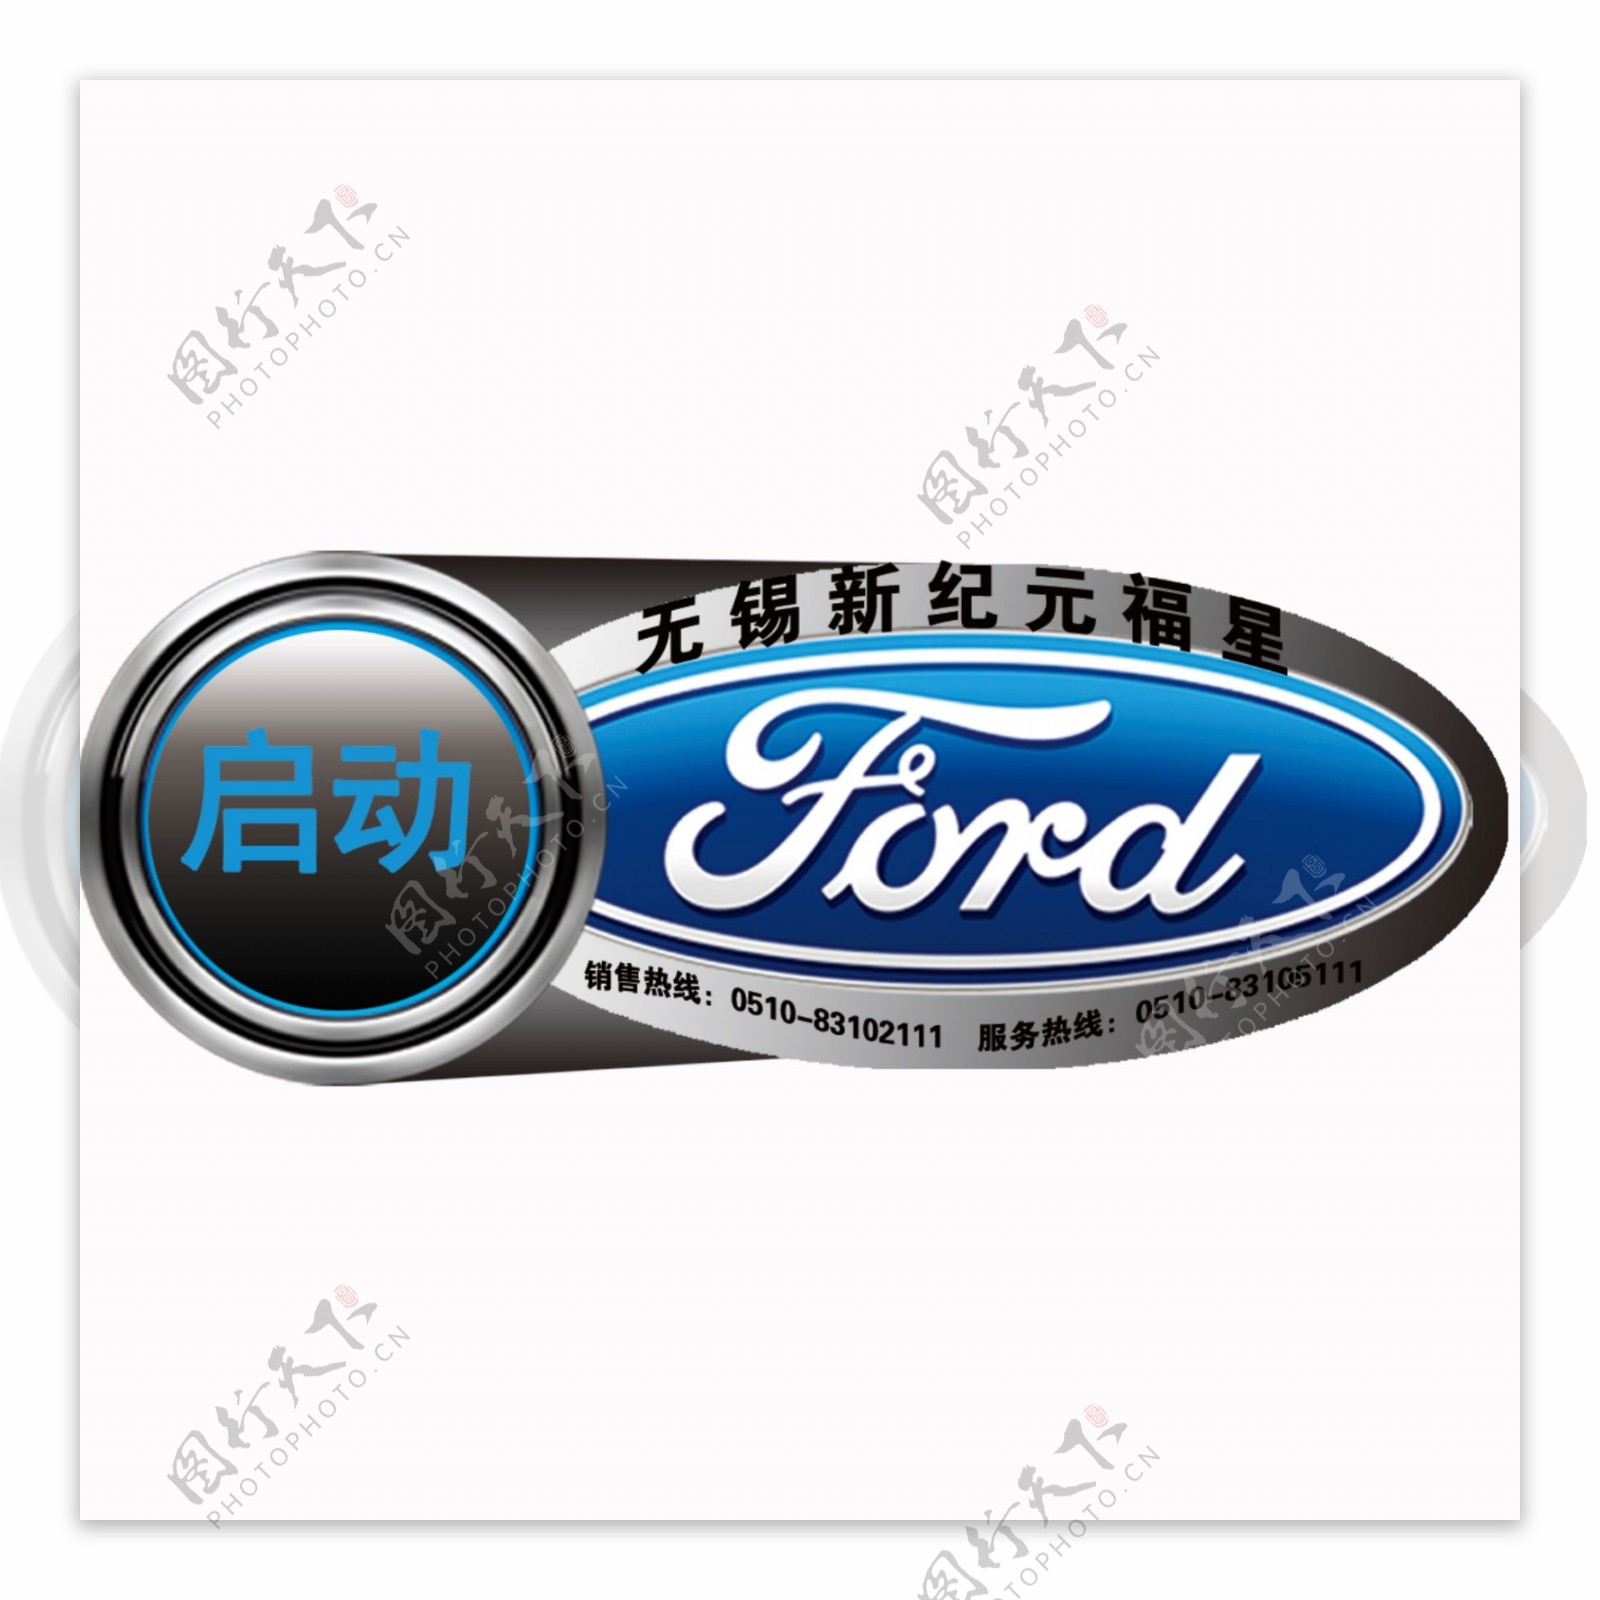 福特汽车LOGO图片含义/演变/变迁及品牌介绍 - LOGO设计趋势